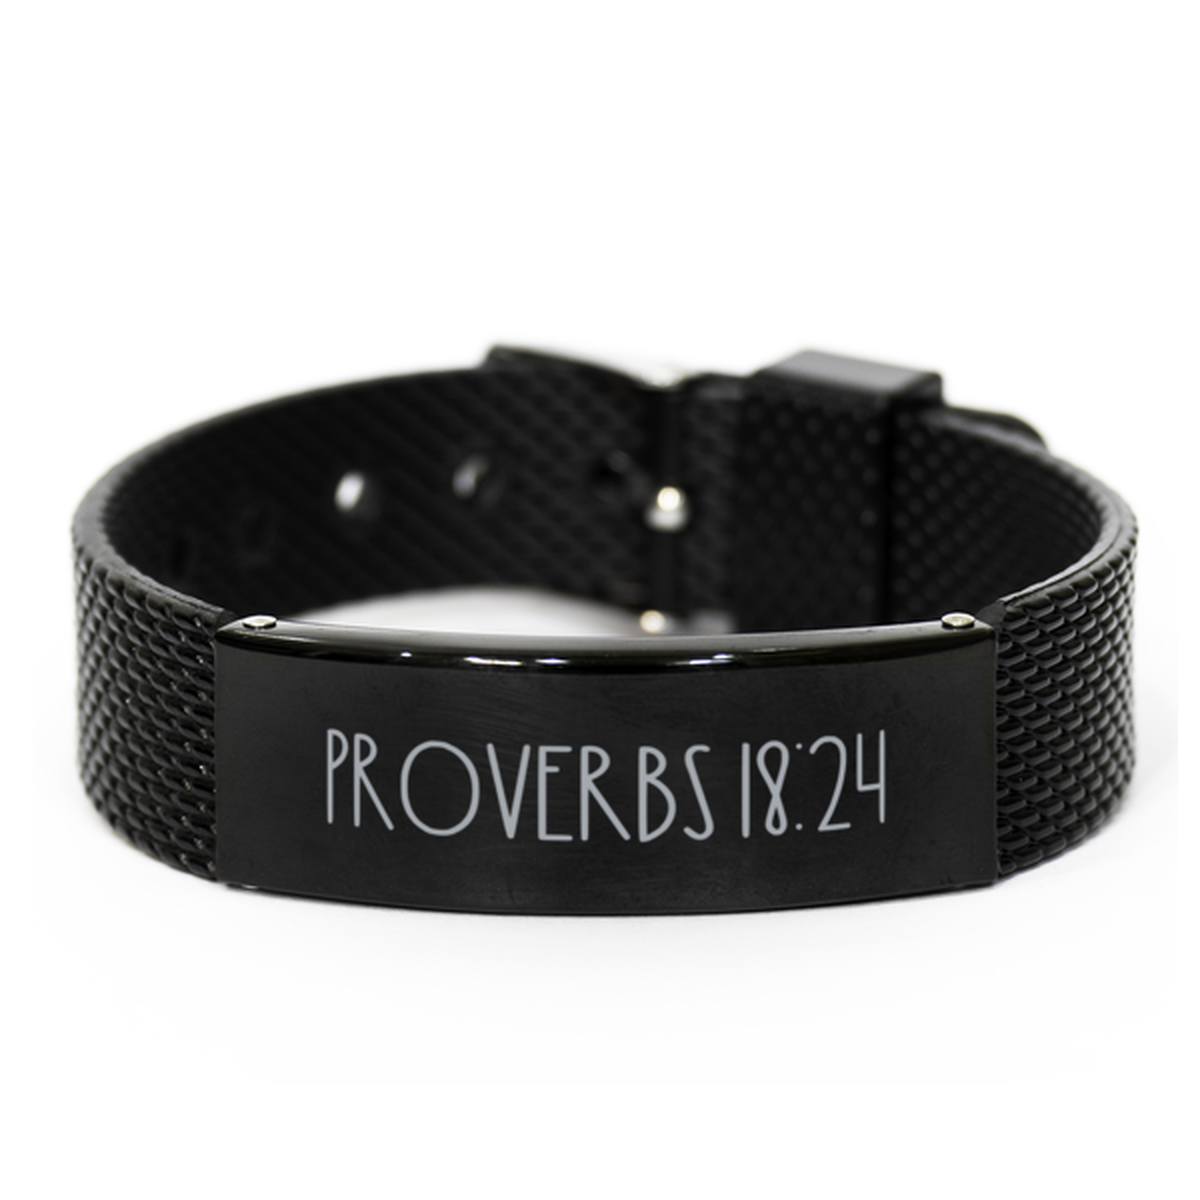 Bible Verse Bracelet, Proverbs 18 24 Bracelet, Christian Bracelet, Christian Birthday Gift, Black Stainless Steel Leather Bracelet, Gift for Christian.